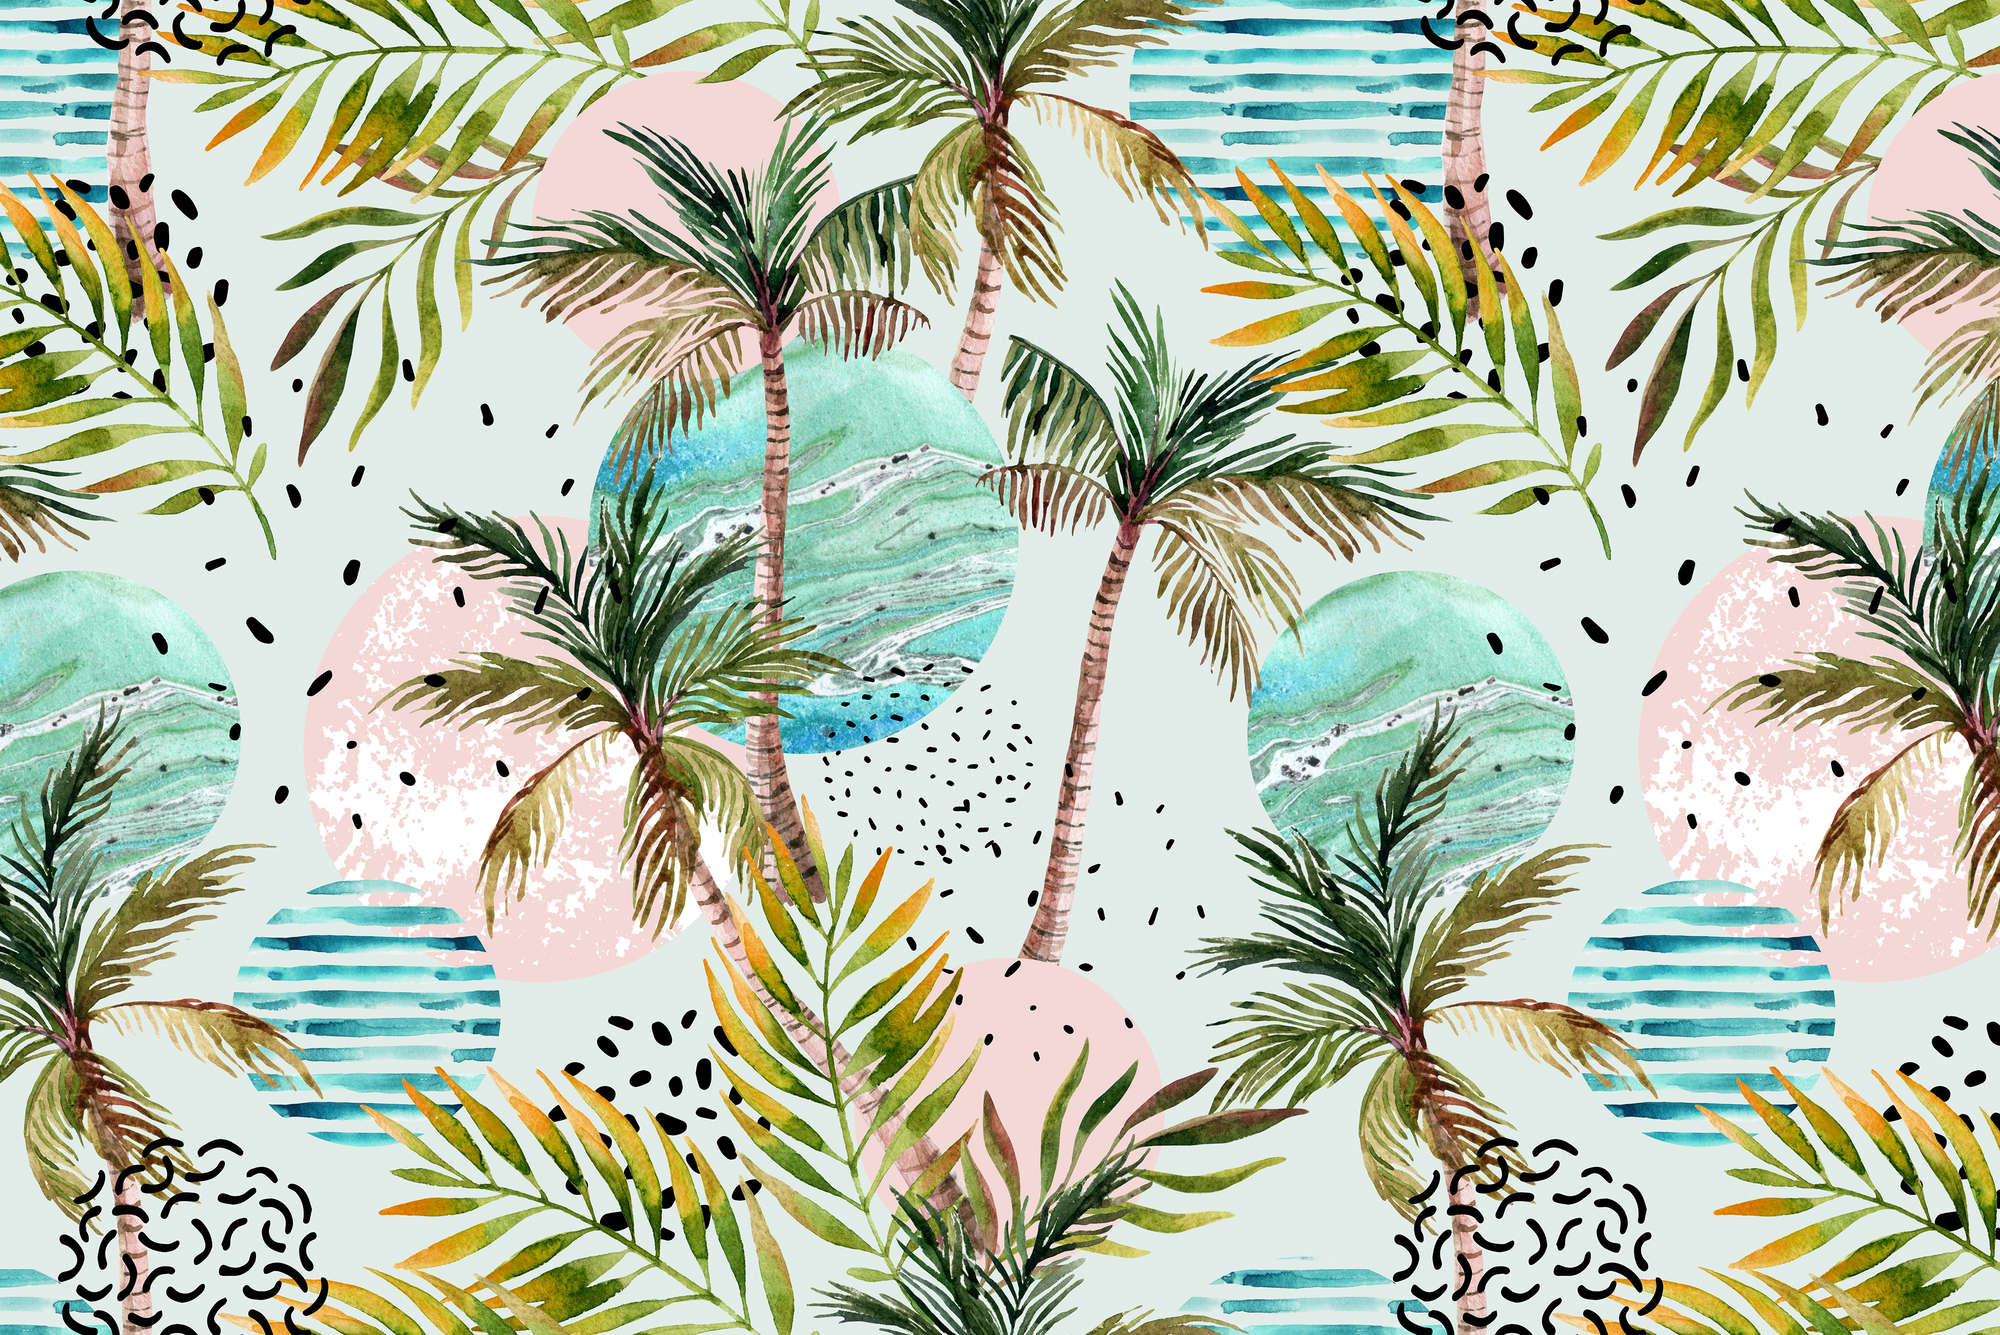             Grafisch Behang Palmbomen met Golfsymbolen op Matglanzend Vlies
        